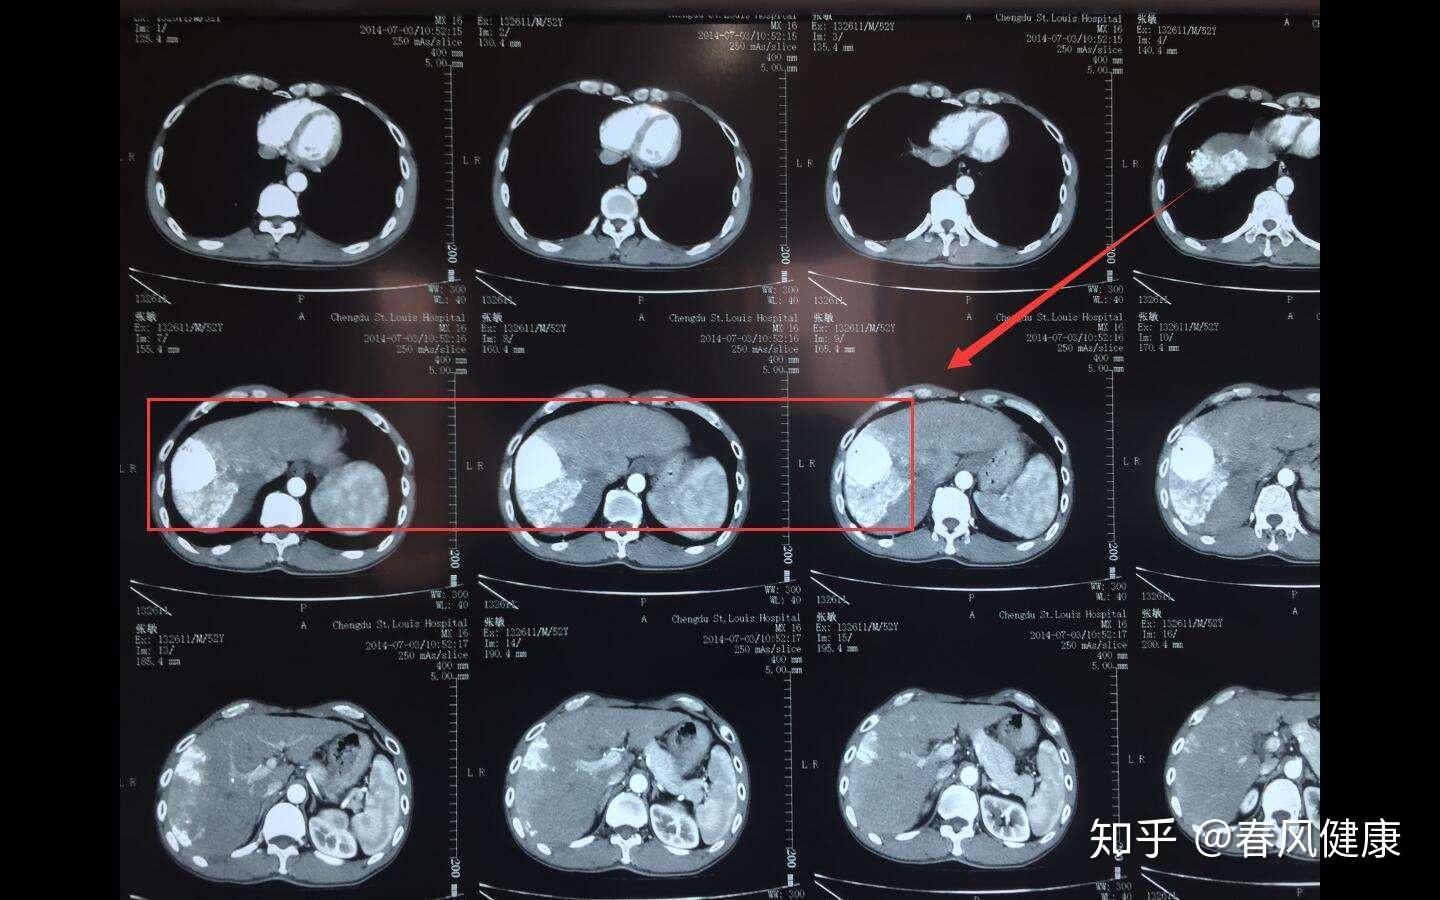 肺癌早期症状 - 搜狗百科